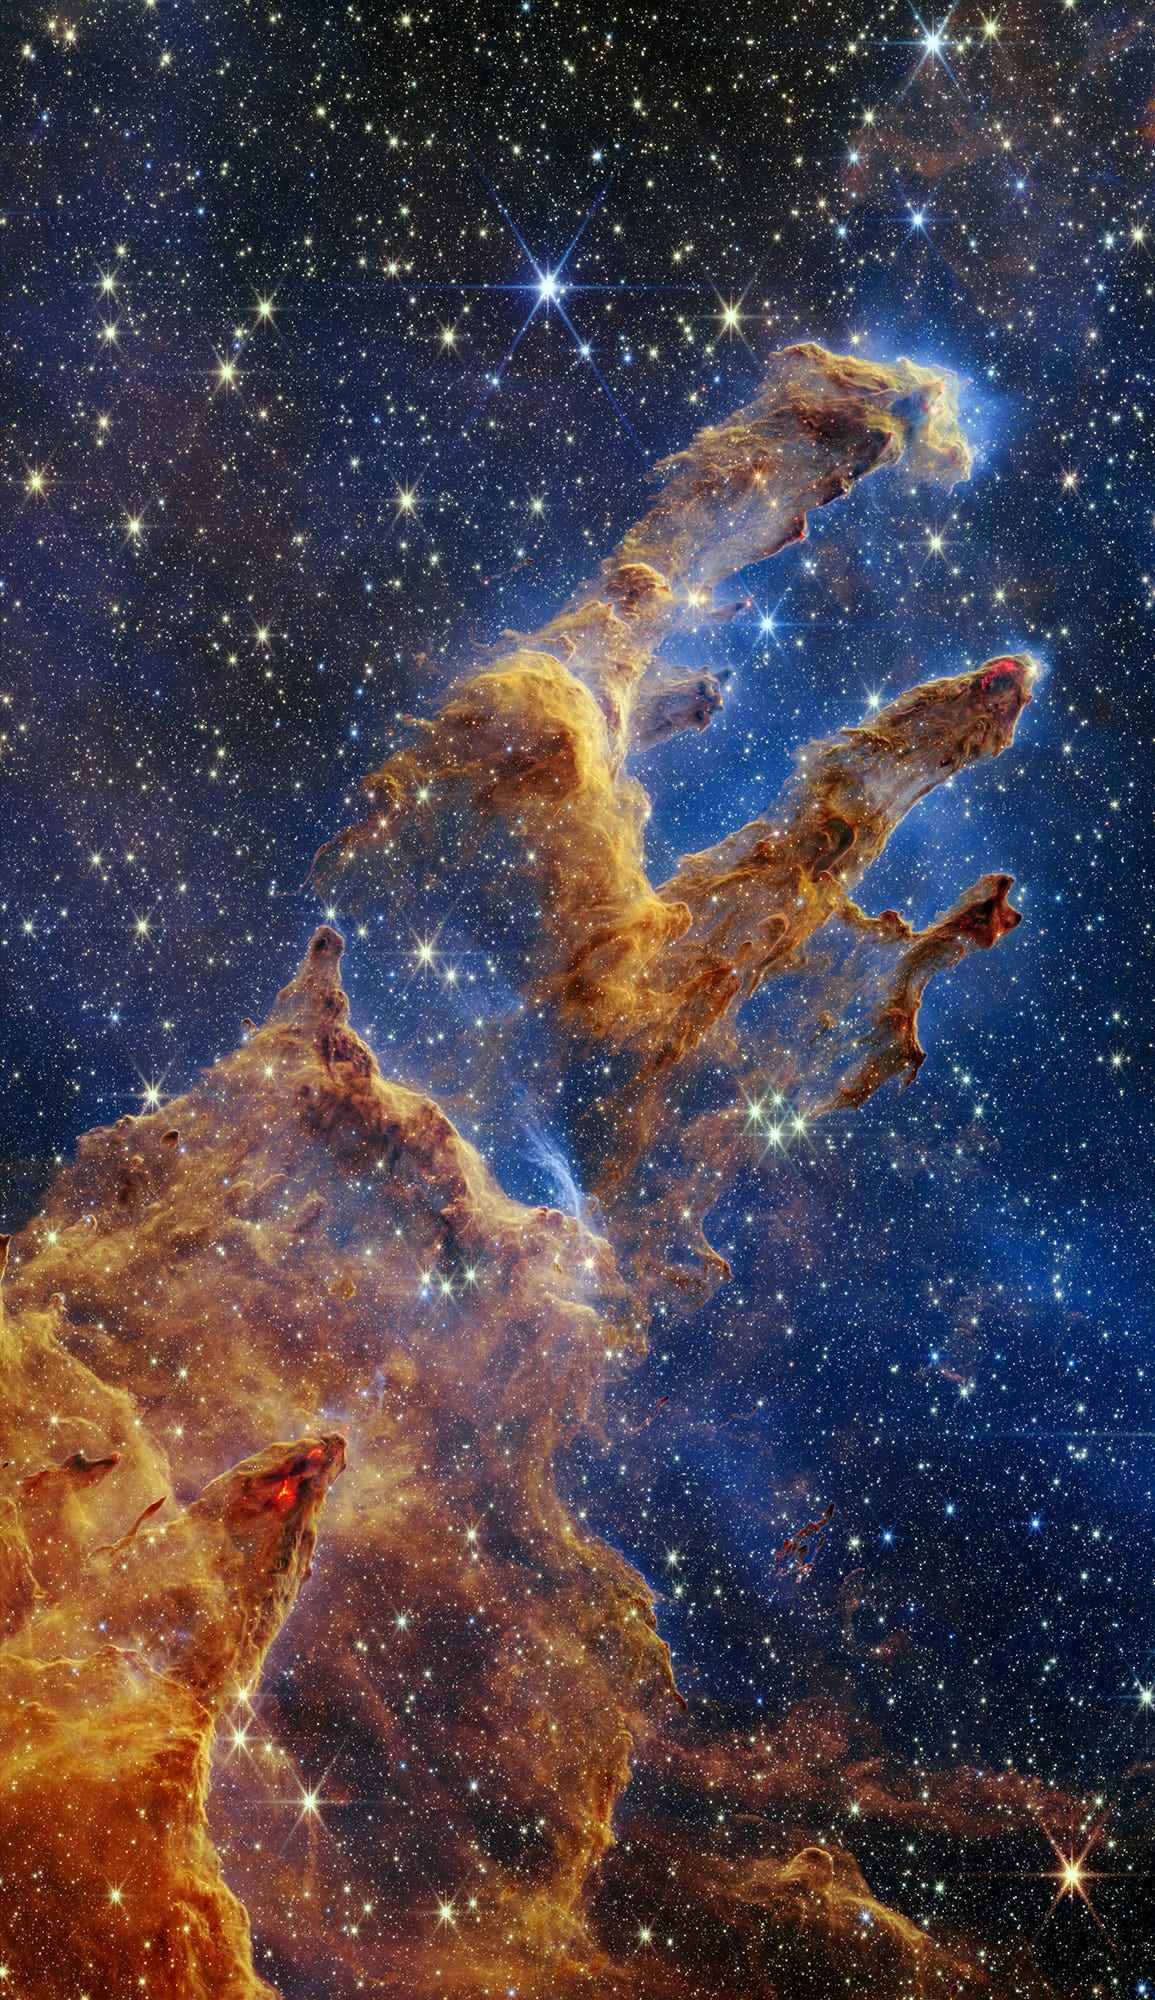 Die Säulen der Schöpfung sind in einem Kaleidoskop aus Farben in der Nahinfrarotlichtansicht des James Webb Space Telescope der NASA hervorgehoben.  Die Säulen sehen aus wie Bögen und Spitzen, die sich aus einer Wüstenlandschaft erheben, sind aber mit halbtransparentem Gas und Staub gefüllt und verändern sich ständig.  Dies ist eine Region, in der sich junge Sterne bilden – oder kaum aus ihren staubigen Kokons geplatzt sind, während sie sich weiter bilden.